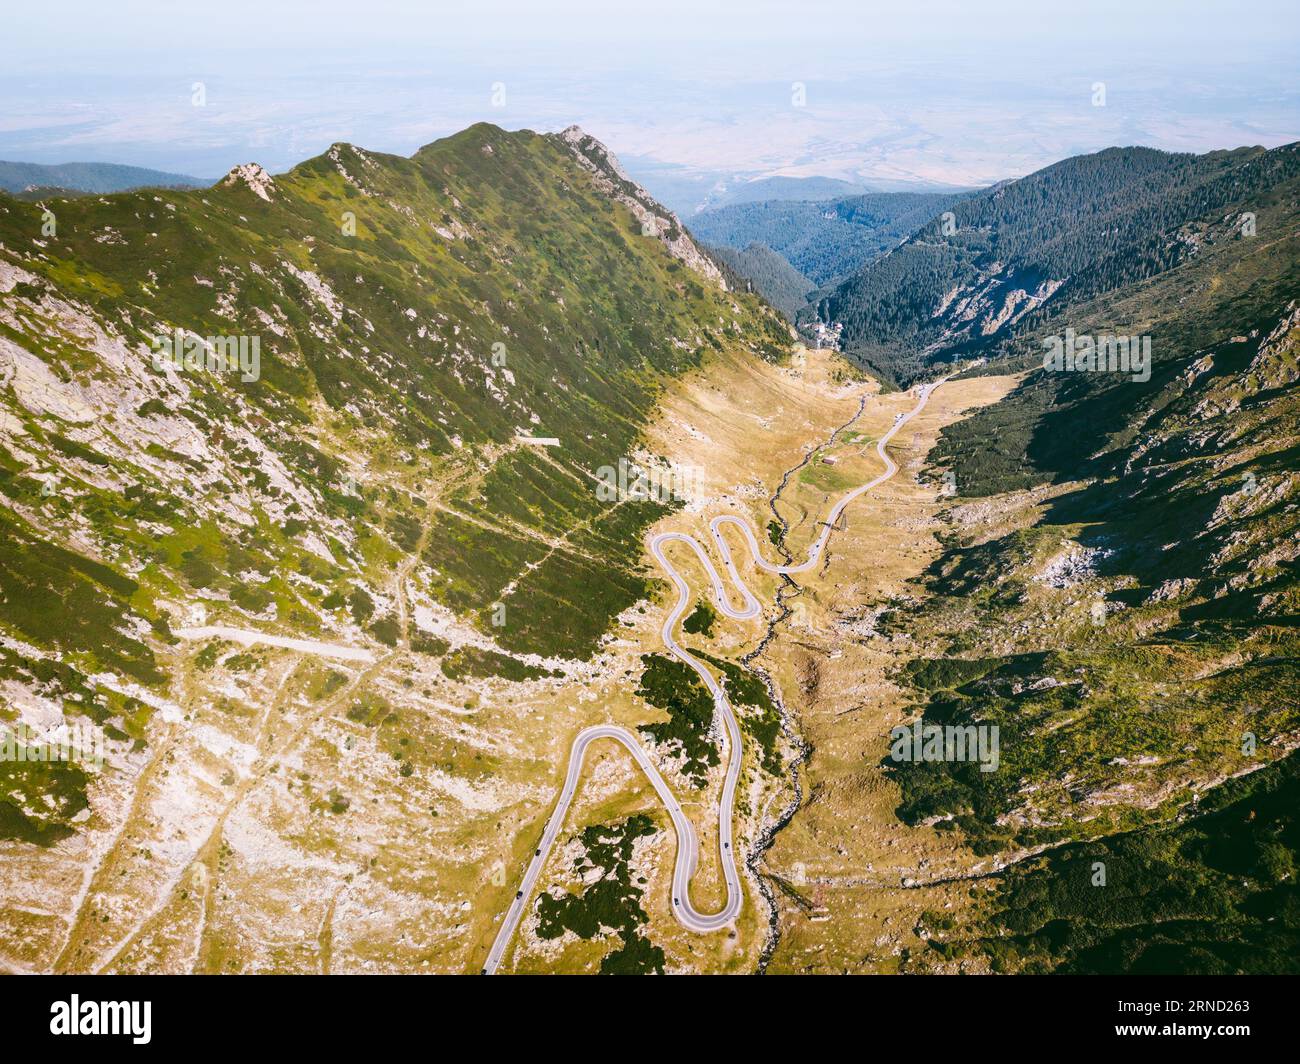 Transfagarasan, Rumänien. Transfagarasan überquert die Karpaten und ist eine der spektakulärsten verwinkelten Bergstraßen der Welt. Stockfoto